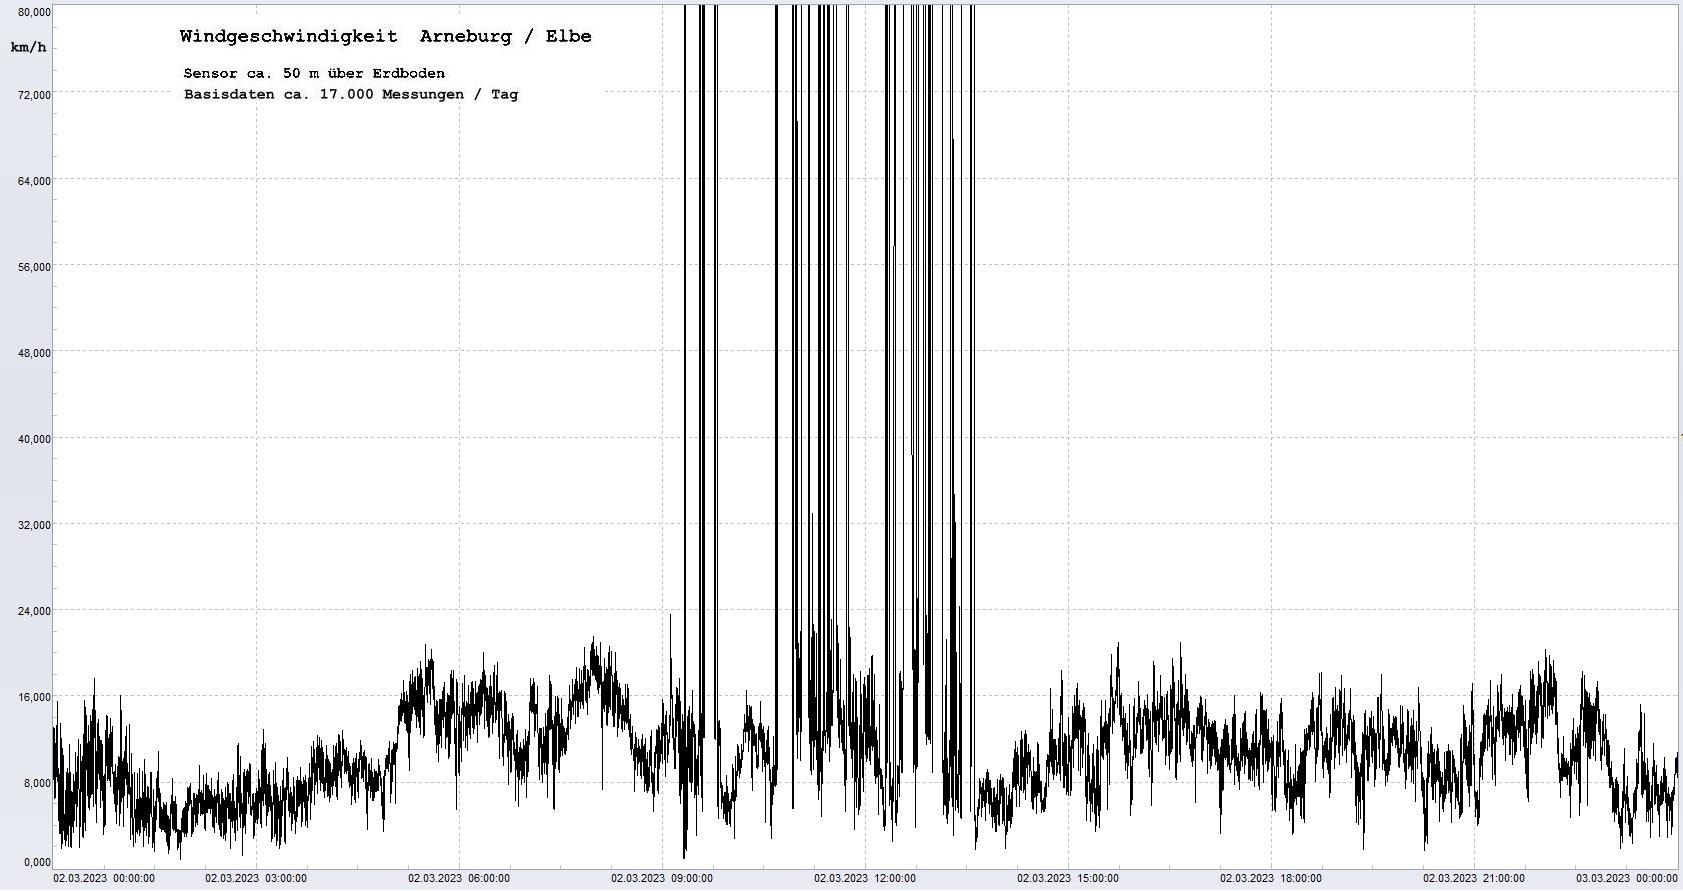 Arneburg Tages-Diagramm Winddaten, 02.03.2023
  Diagramm, Sensor auf Gebäude, ca. 50 m über Erdboden, Basis: 5s-Aufzeichnung